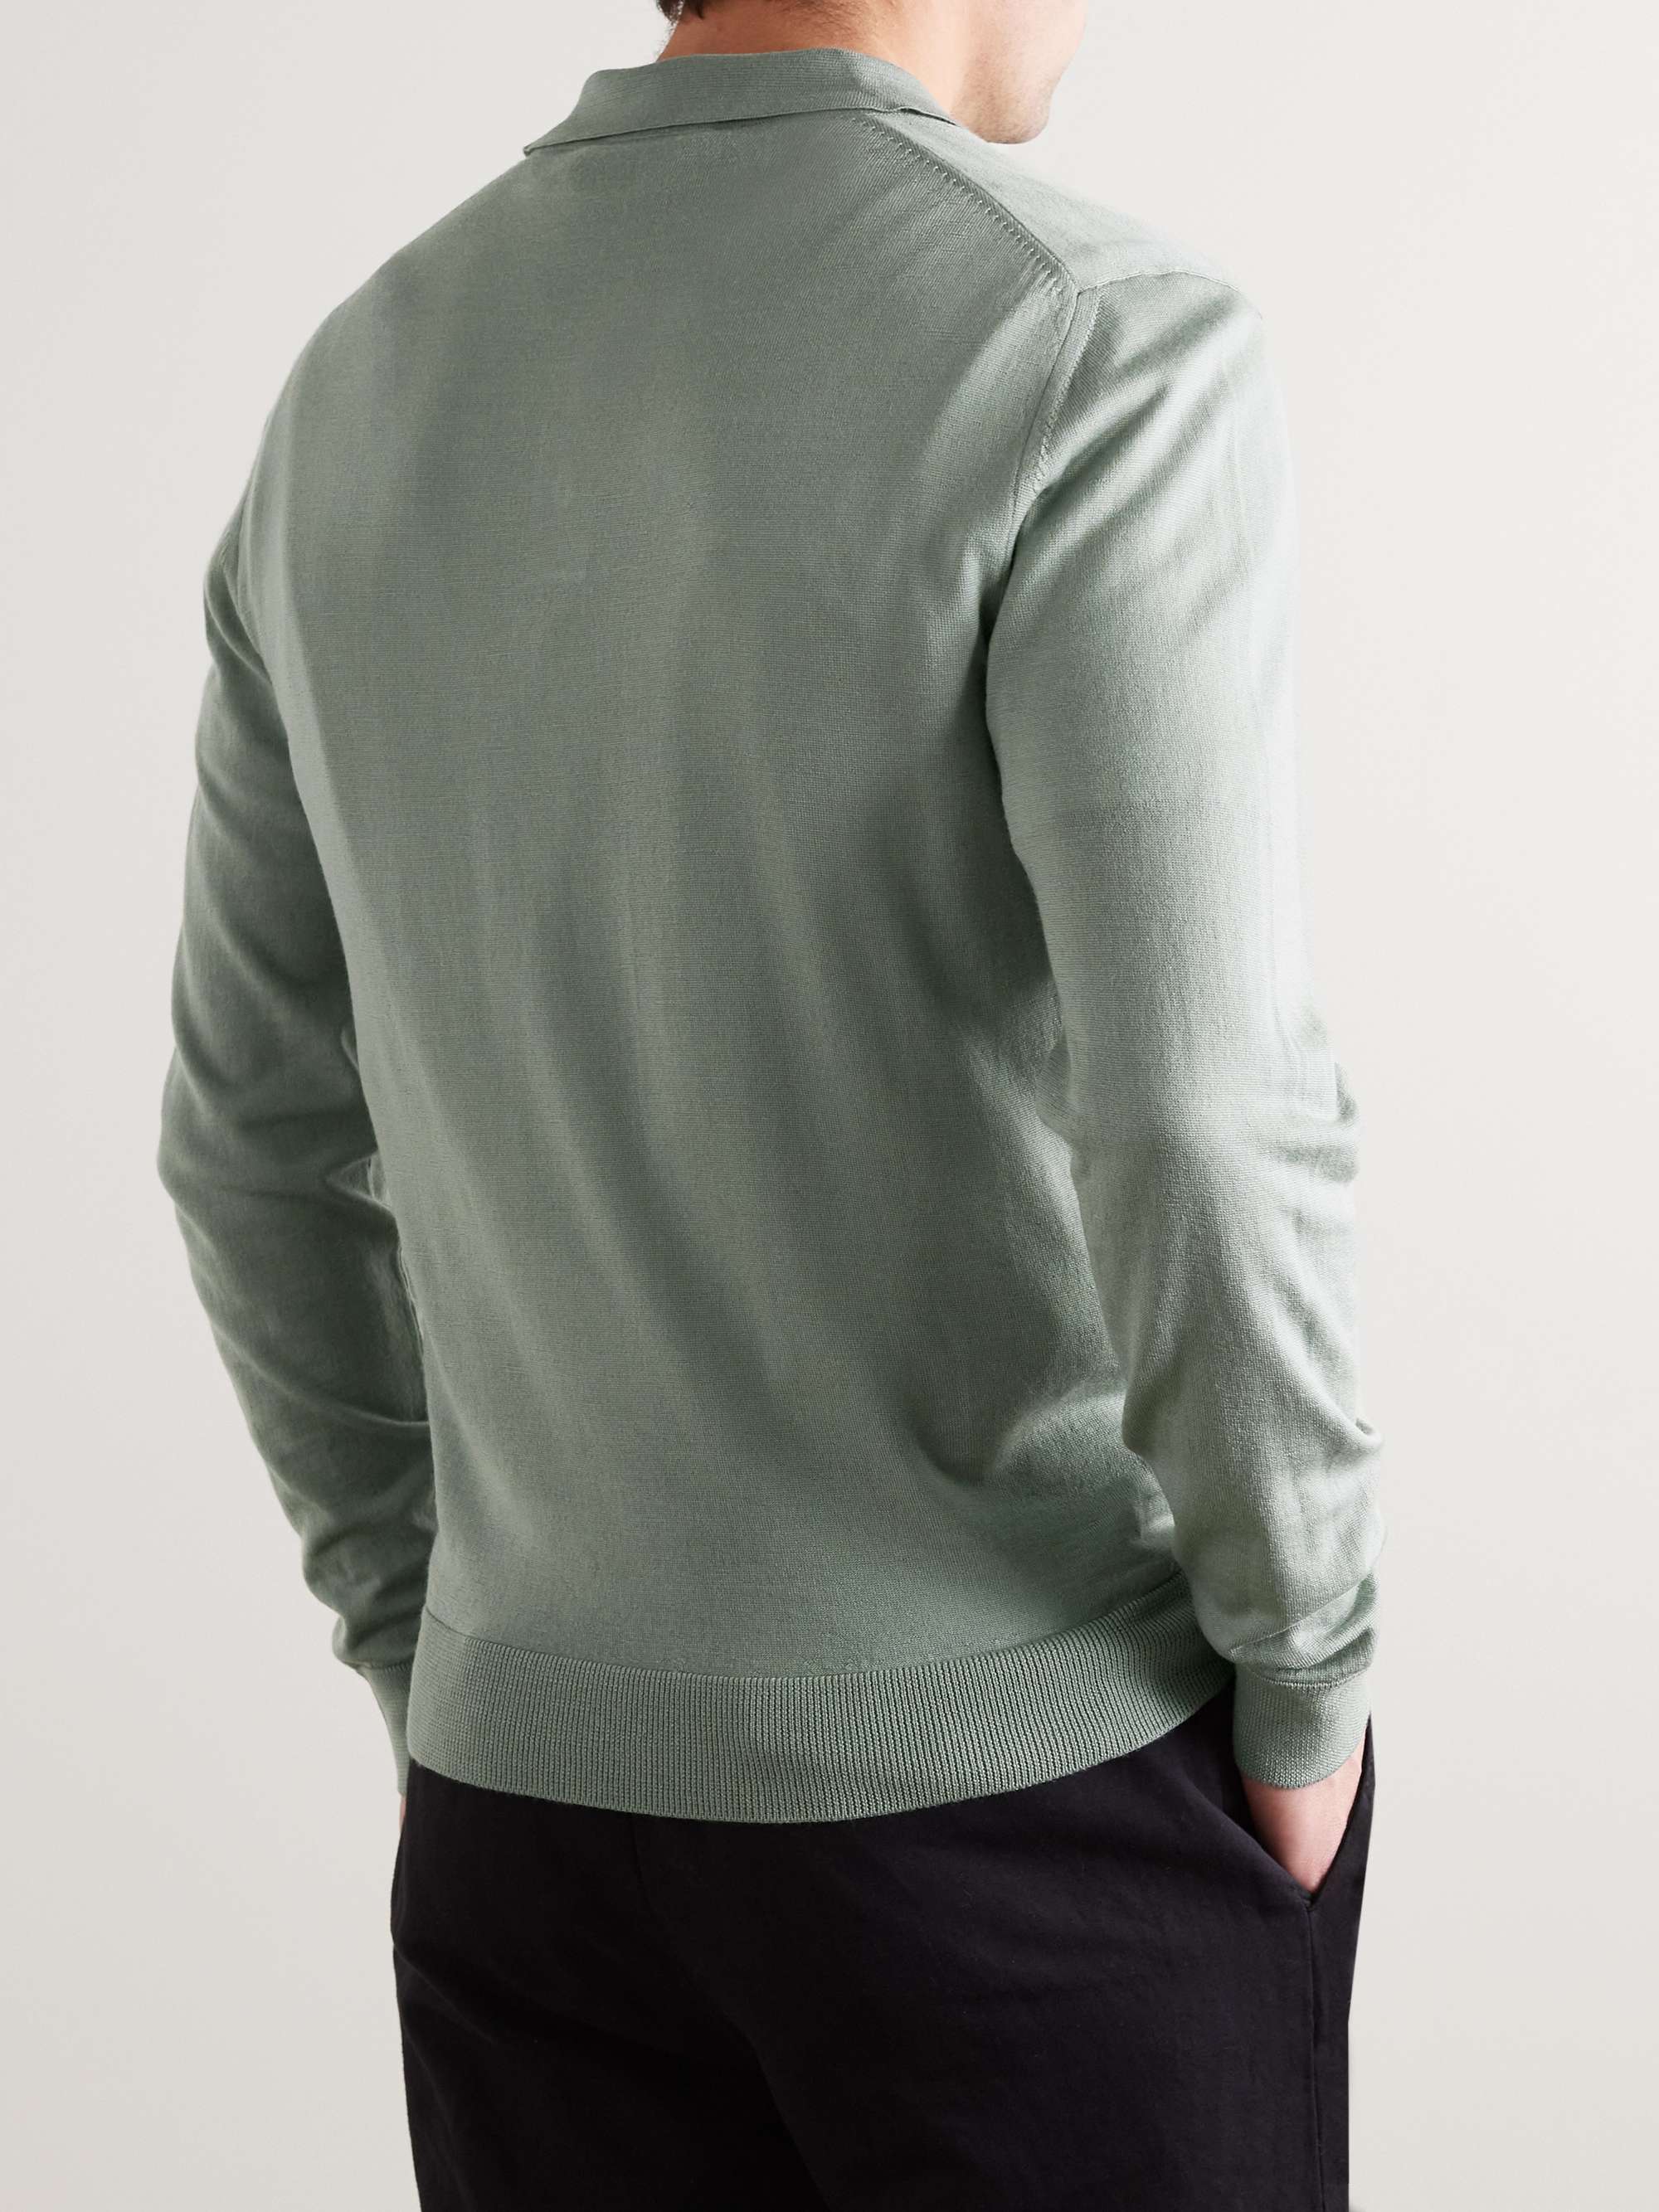 MR P. Slim-Fit Merino Wool Polo Shirt